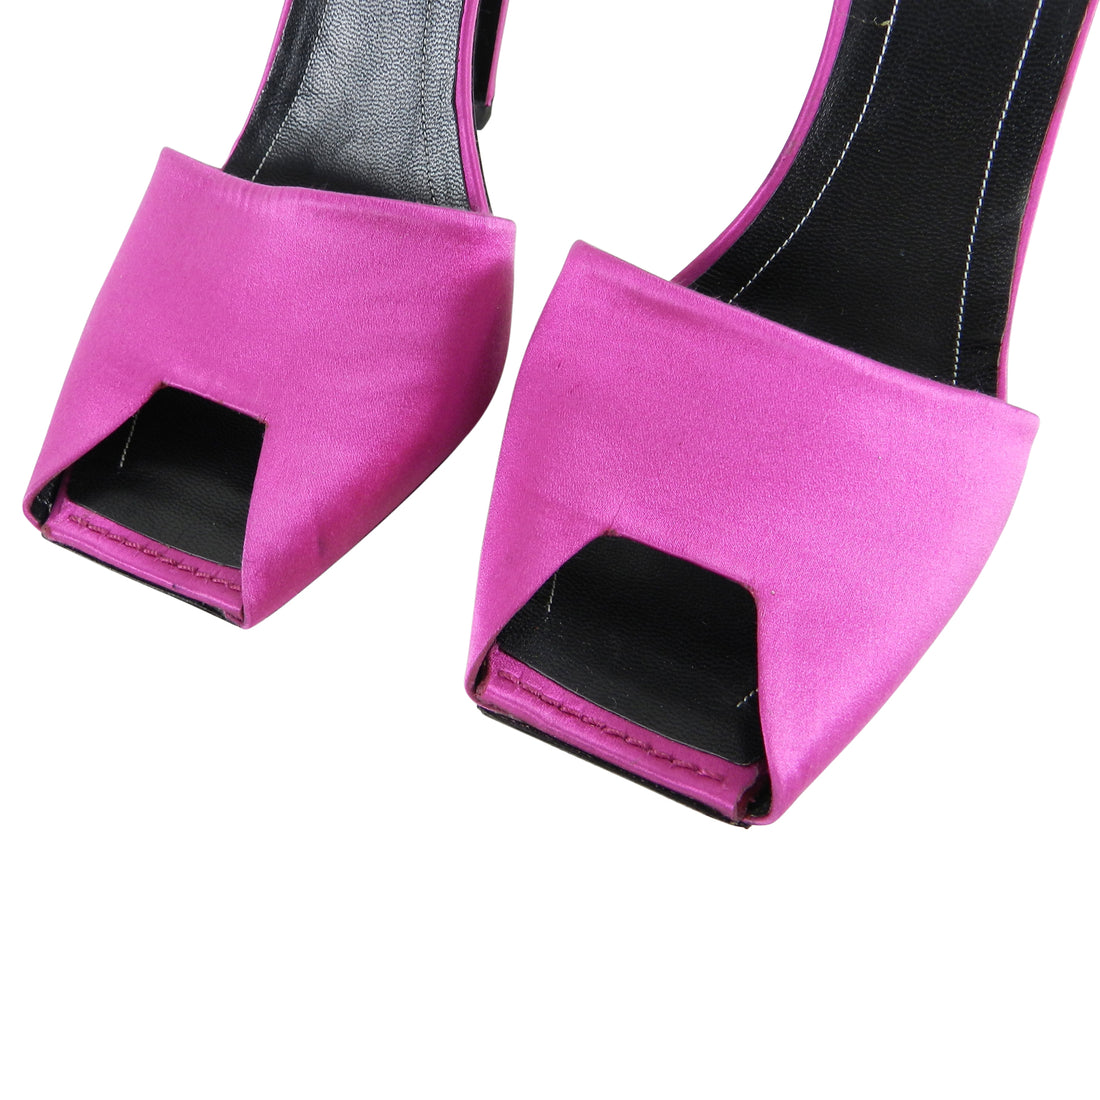 Balenciaga Hot Fuchsia Pink Satin “Broken Heel” Peep Toe Sandals - 39.5